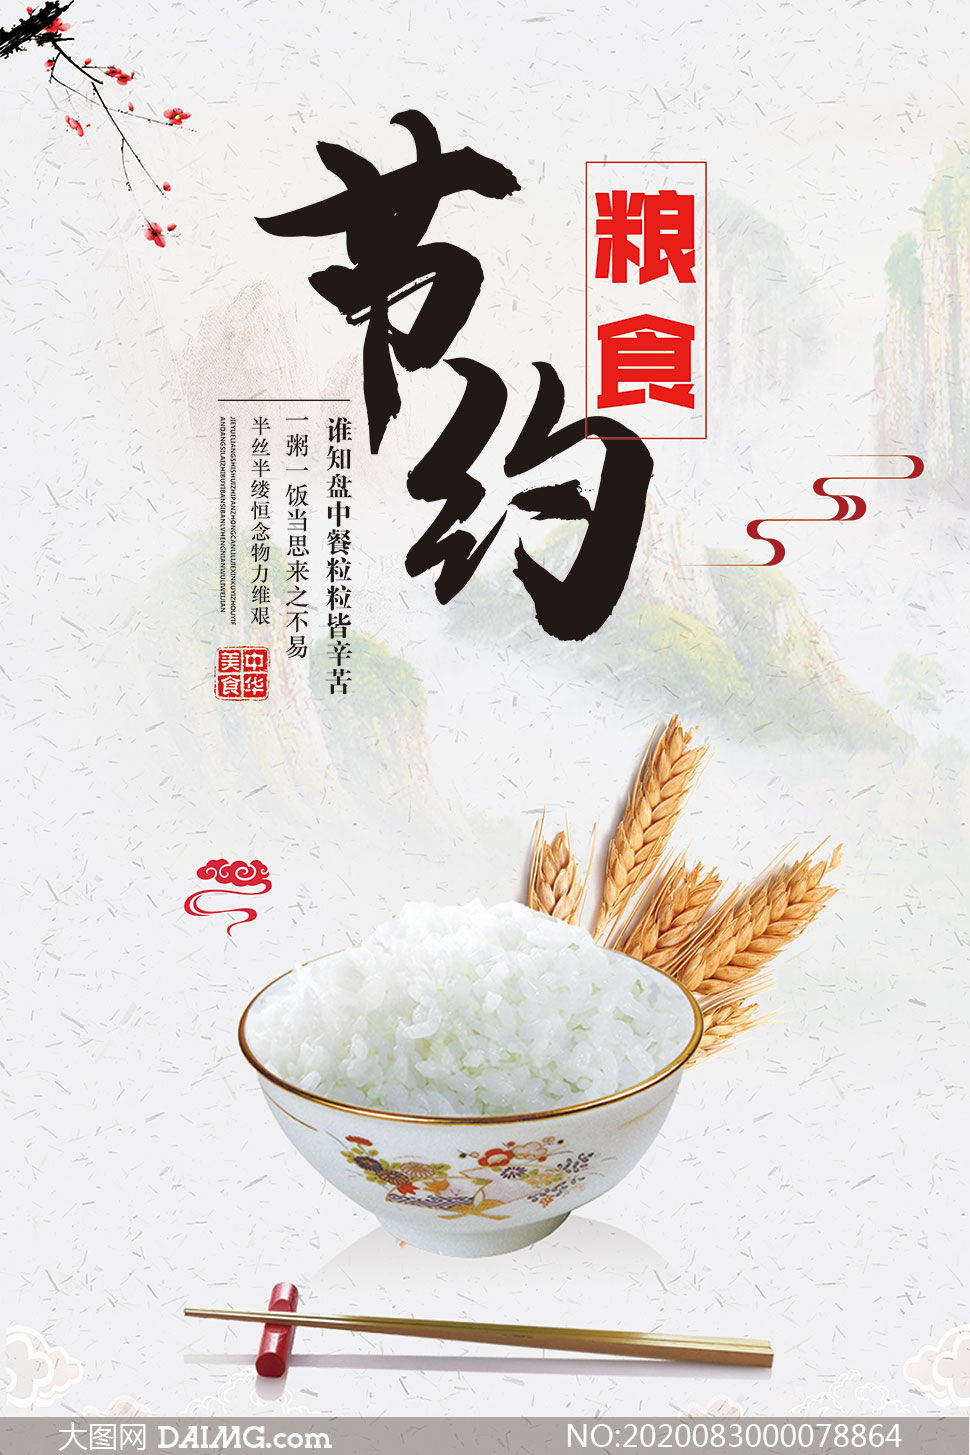 中式主题节约粮食宣传海报psd素材